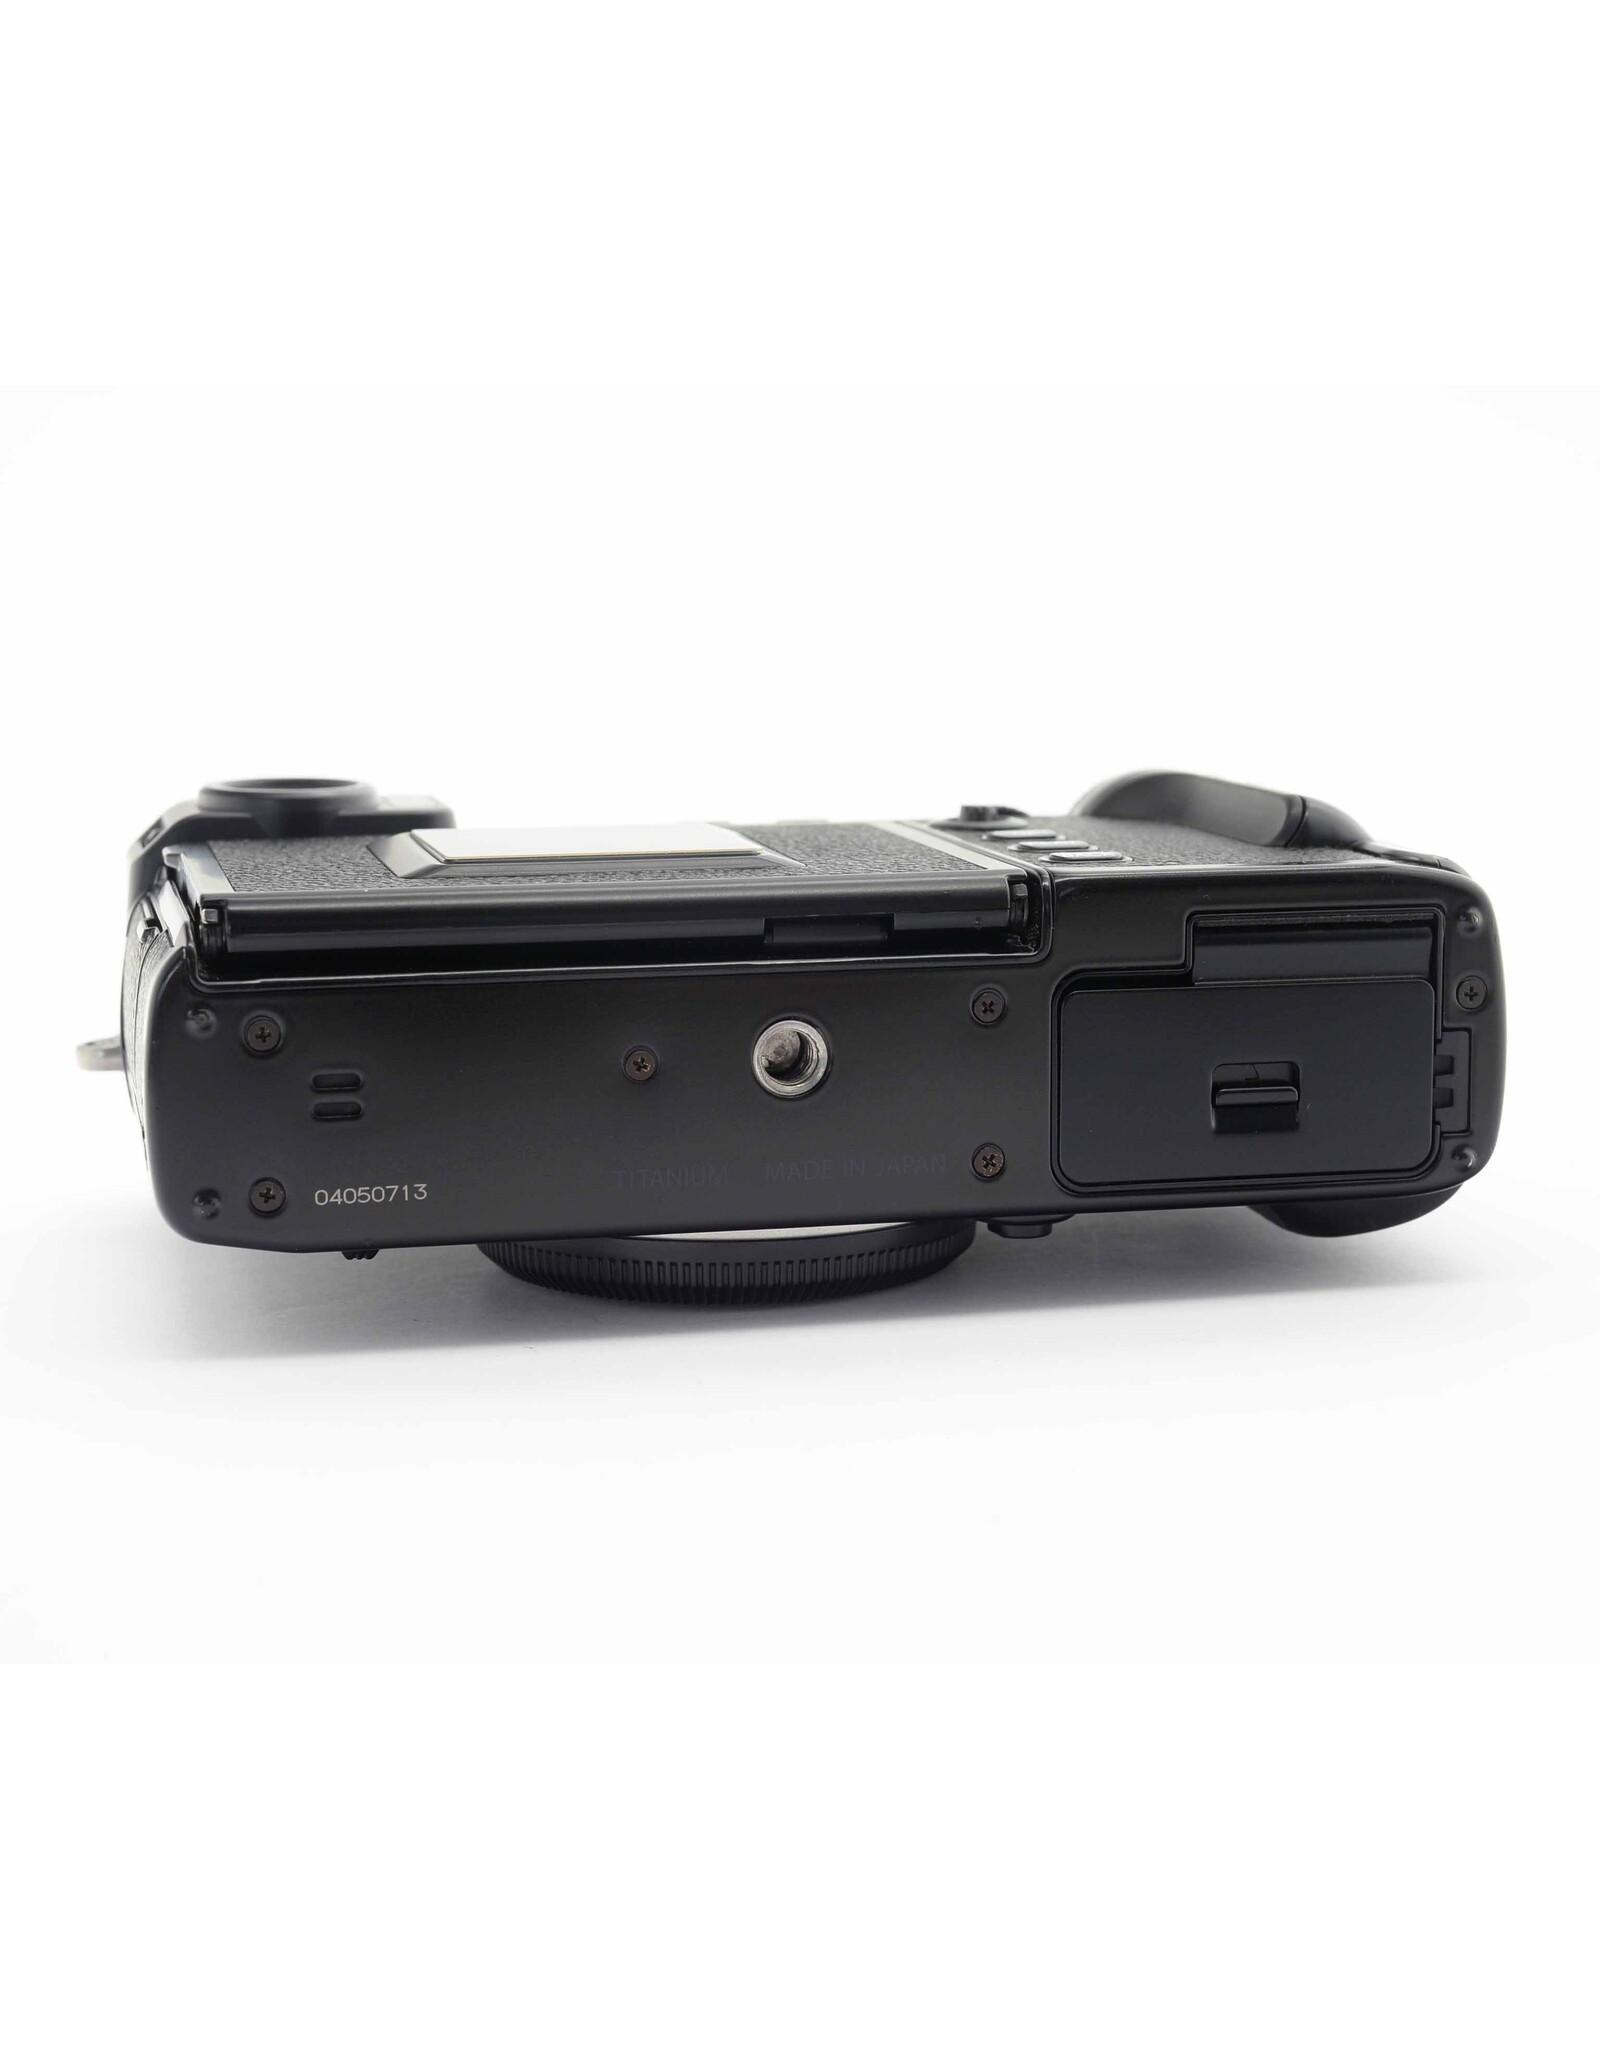 Fujifilm Fuji X-Pro 3 Black   A4022306